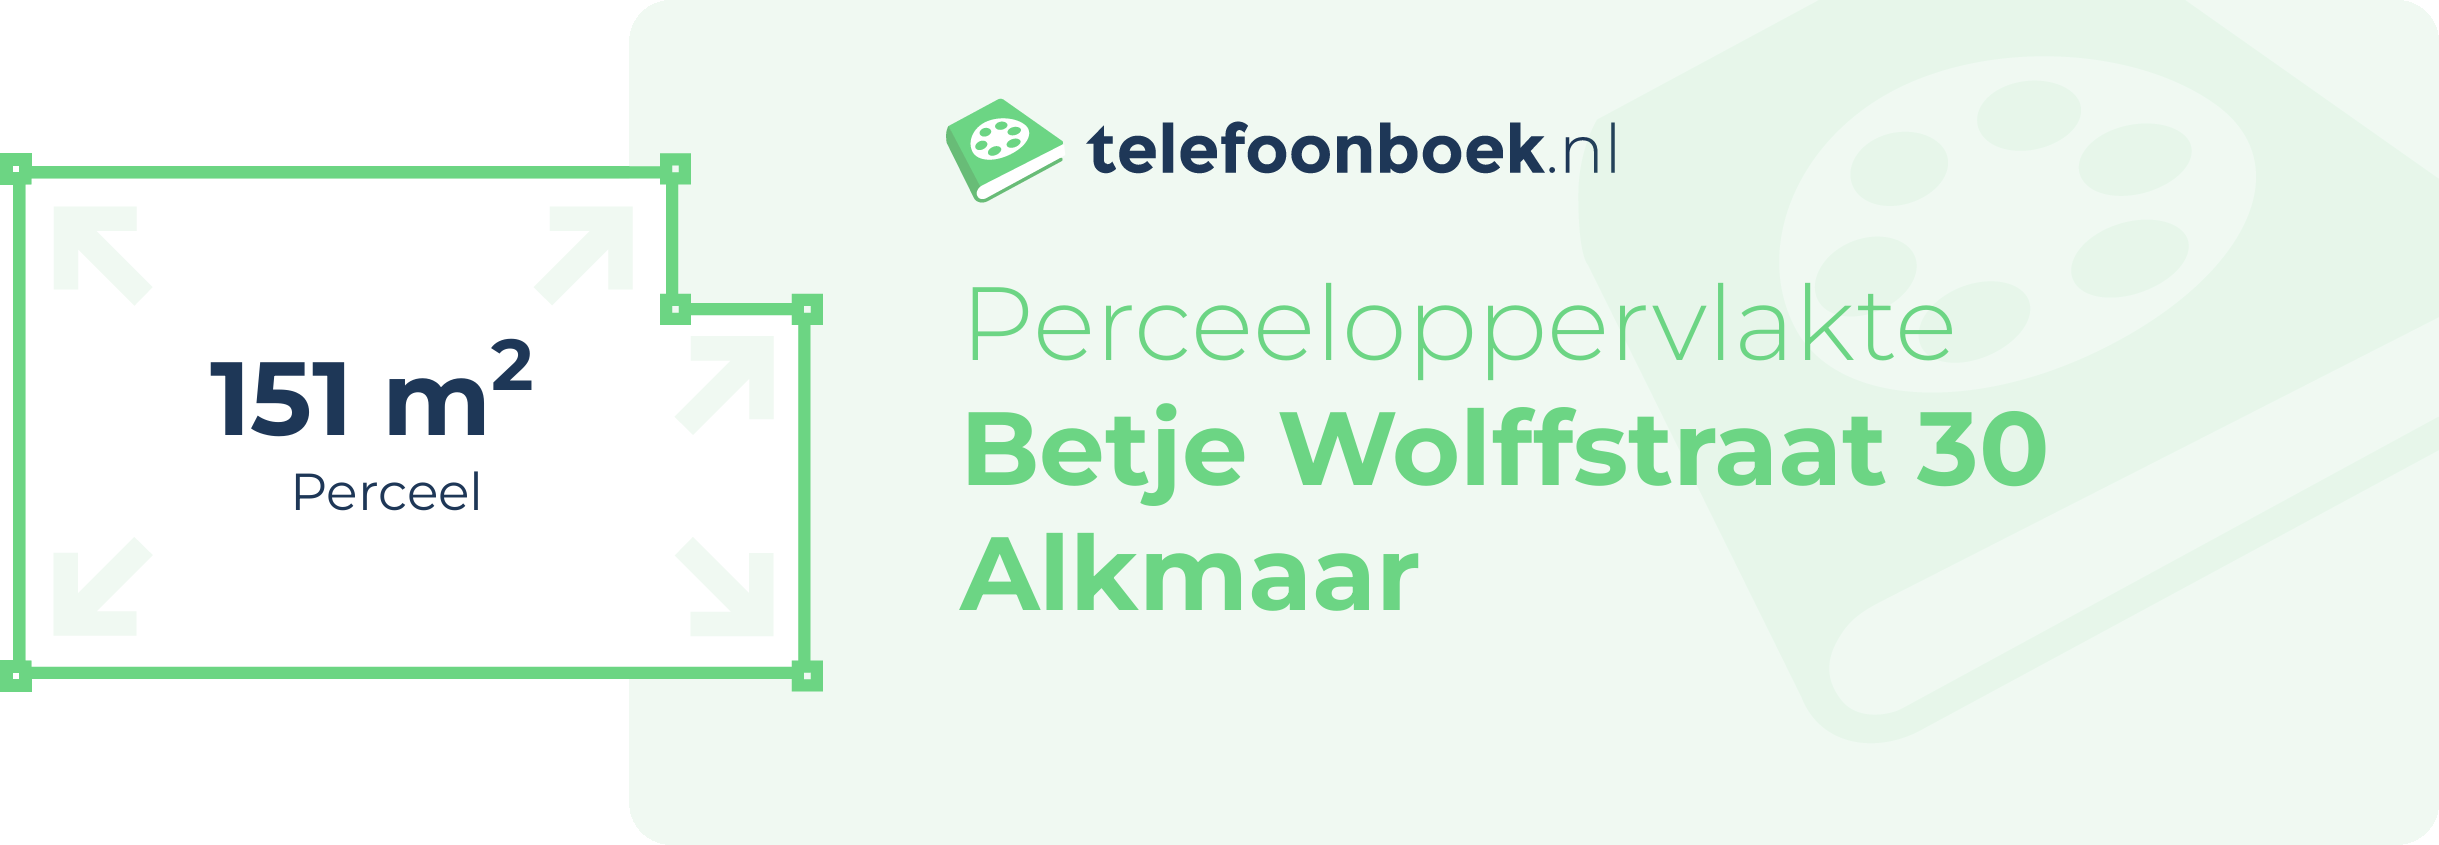 Perceeloppervlakte Betje Wolffstraat 30 Alkmaar